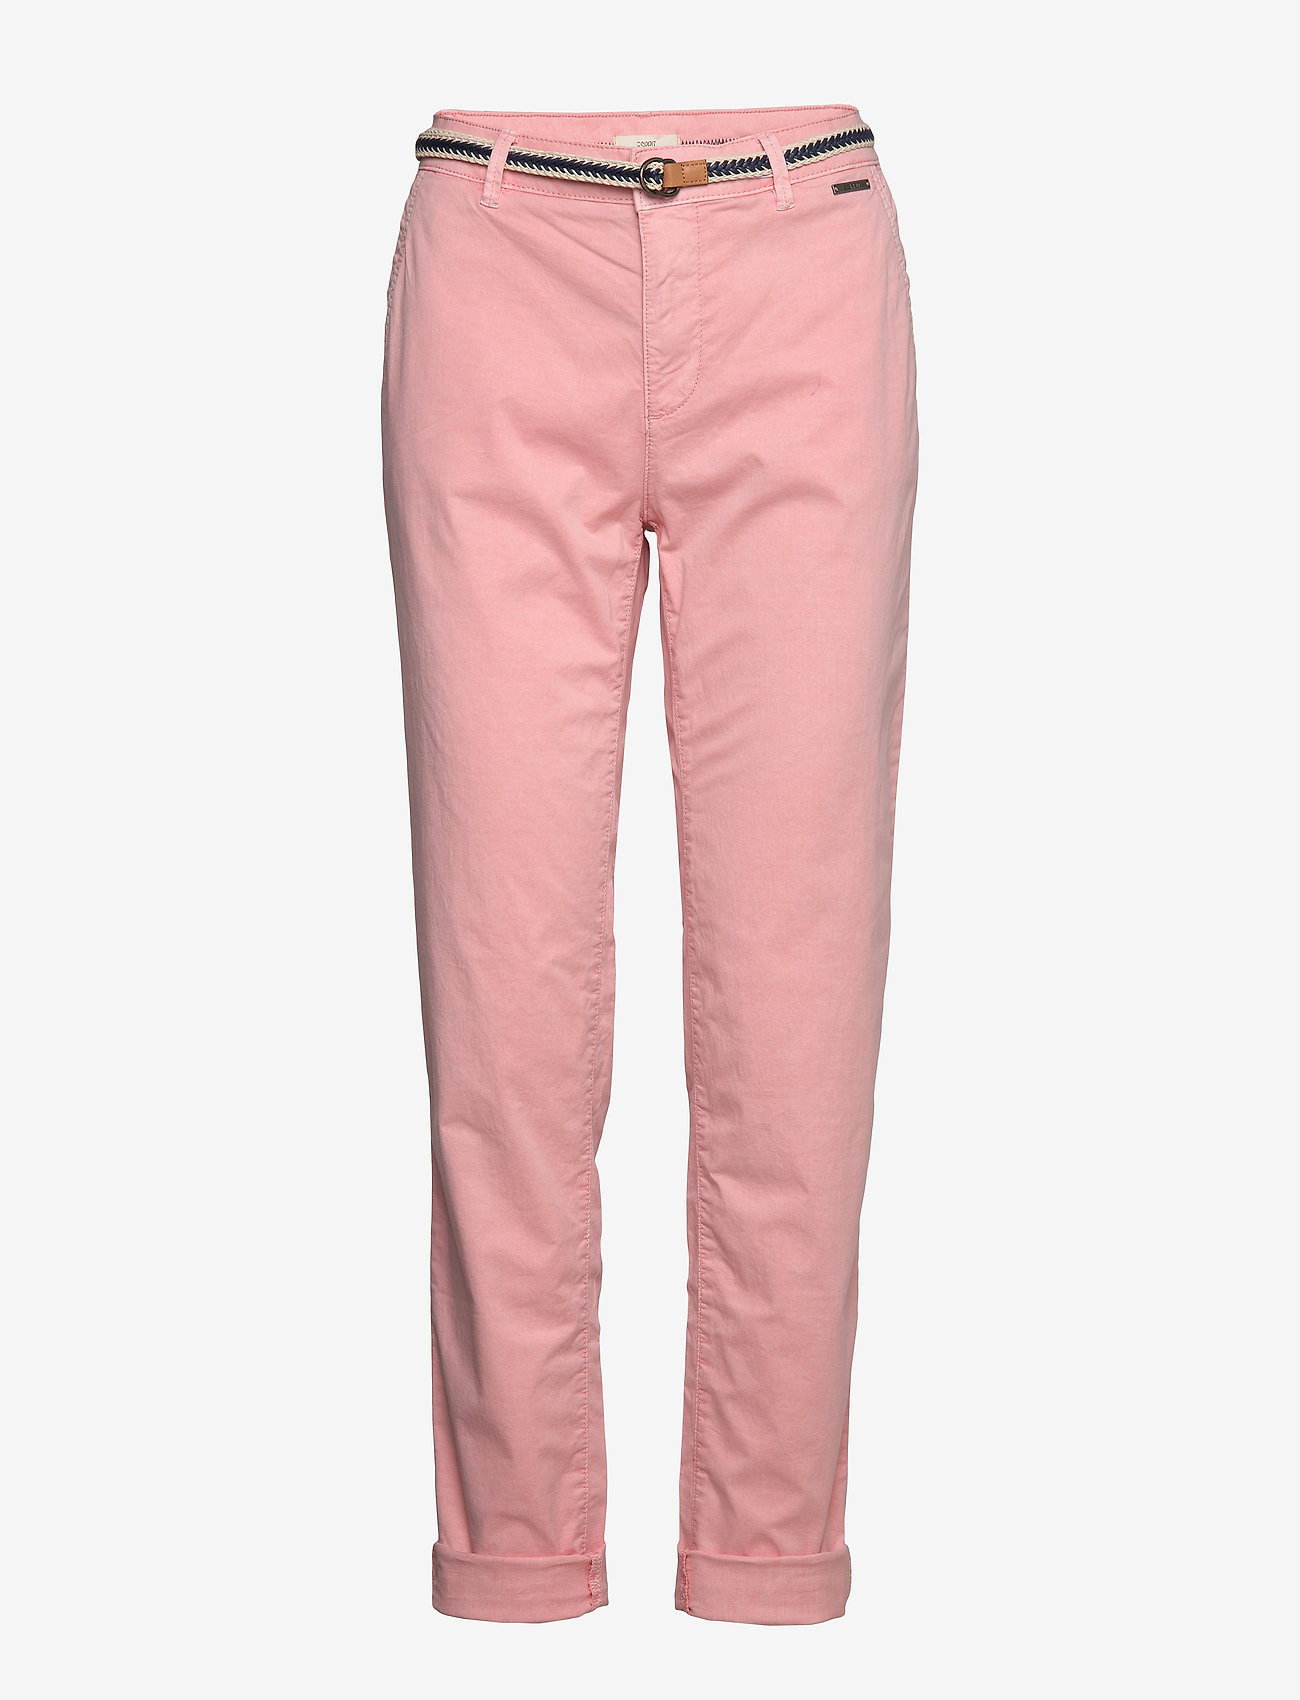 Esprit Casual Pants Woven Blush 29999 Kr